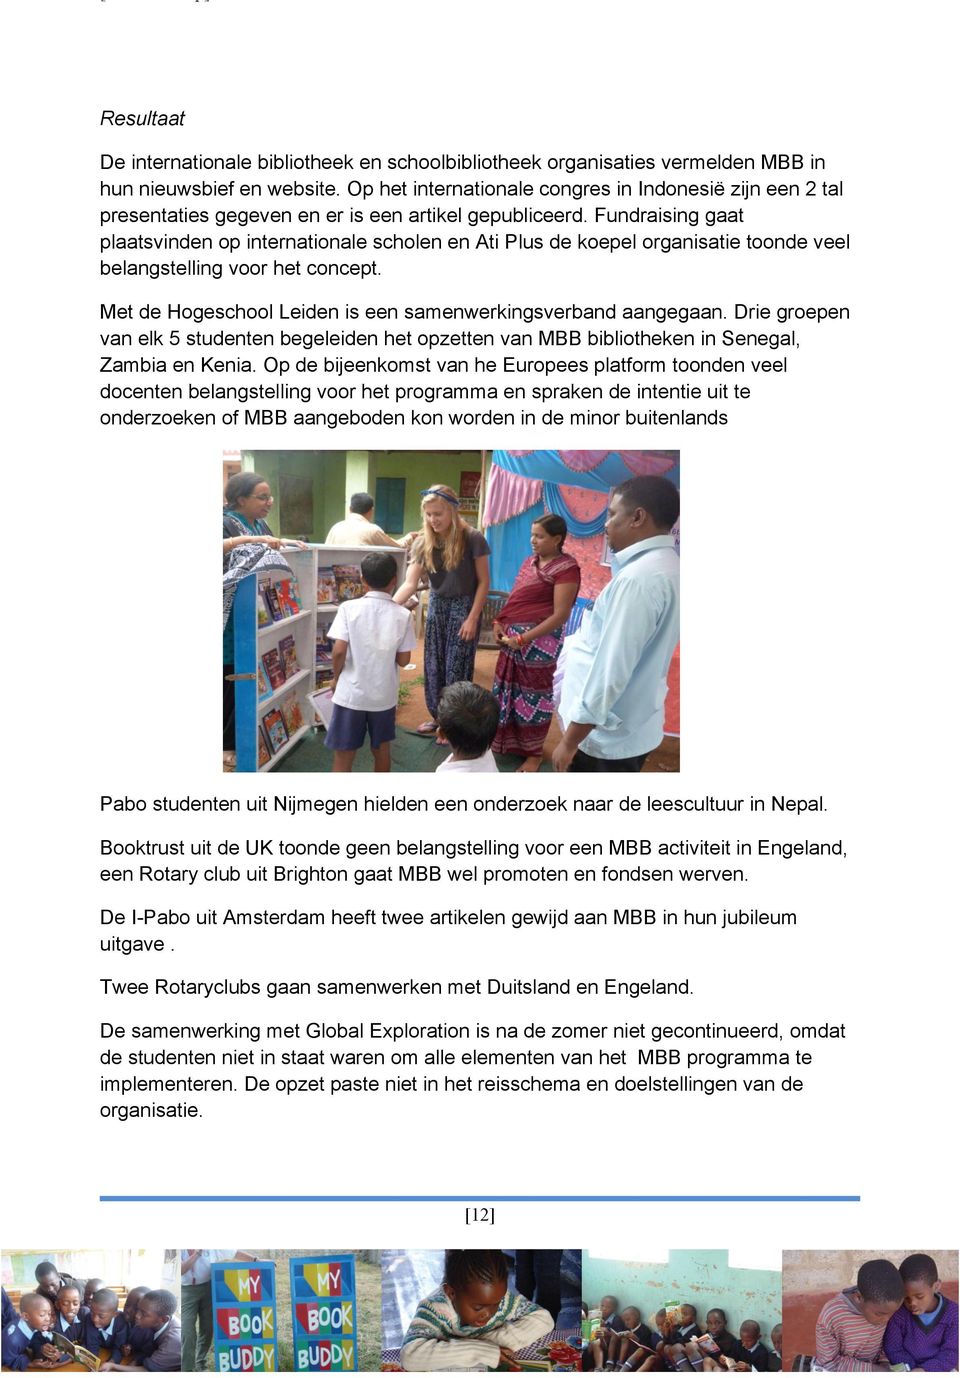 Fundraising gaat plaatsvinden op internationale scholen en Ati Plus de koepel organisatie toonde veel belangstelling voor het concept. Met de Hogeschool Leiden is een samenwerkingsverband aangegaan.